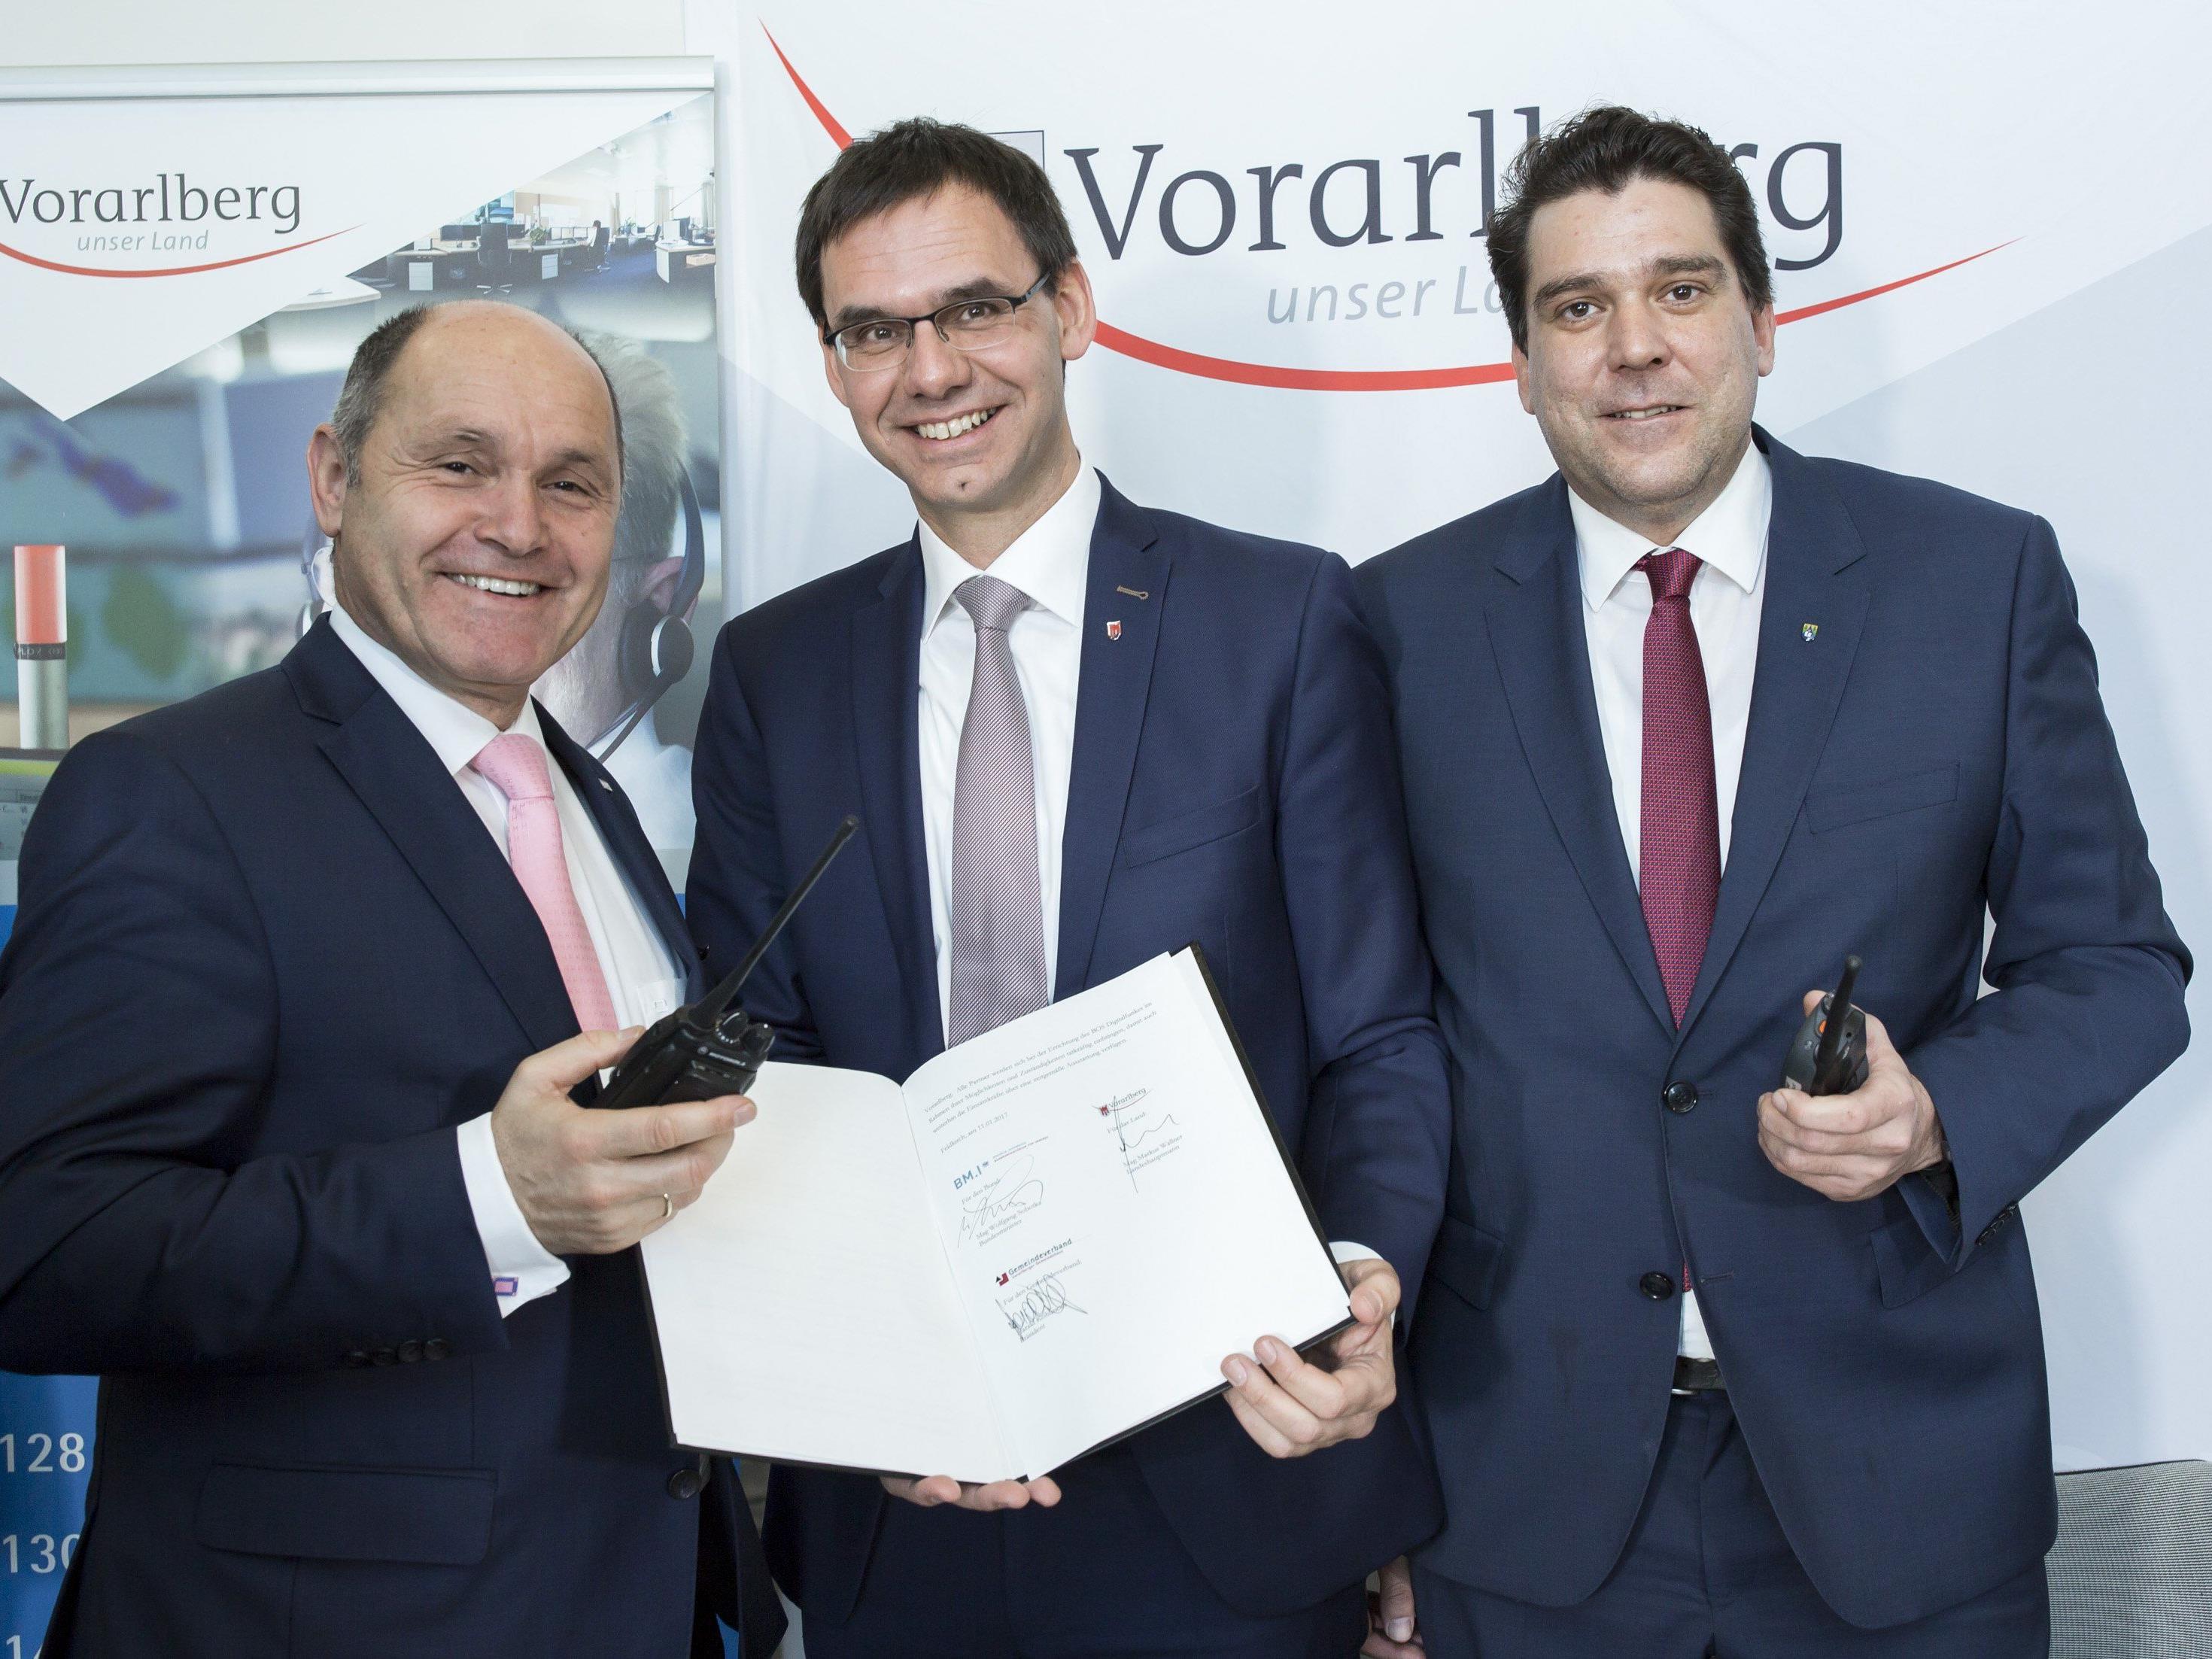 Neues Digitalfunknetz für Vorarlberg: Innenminister Wolfgang Sobotka, Landeshauptmann Markus Wallner und Gemeindeverbandspräsident Harald Köhlmeier unterzeichneten eine entsprechende Vereinbarung in der RFL in Feldkirch.